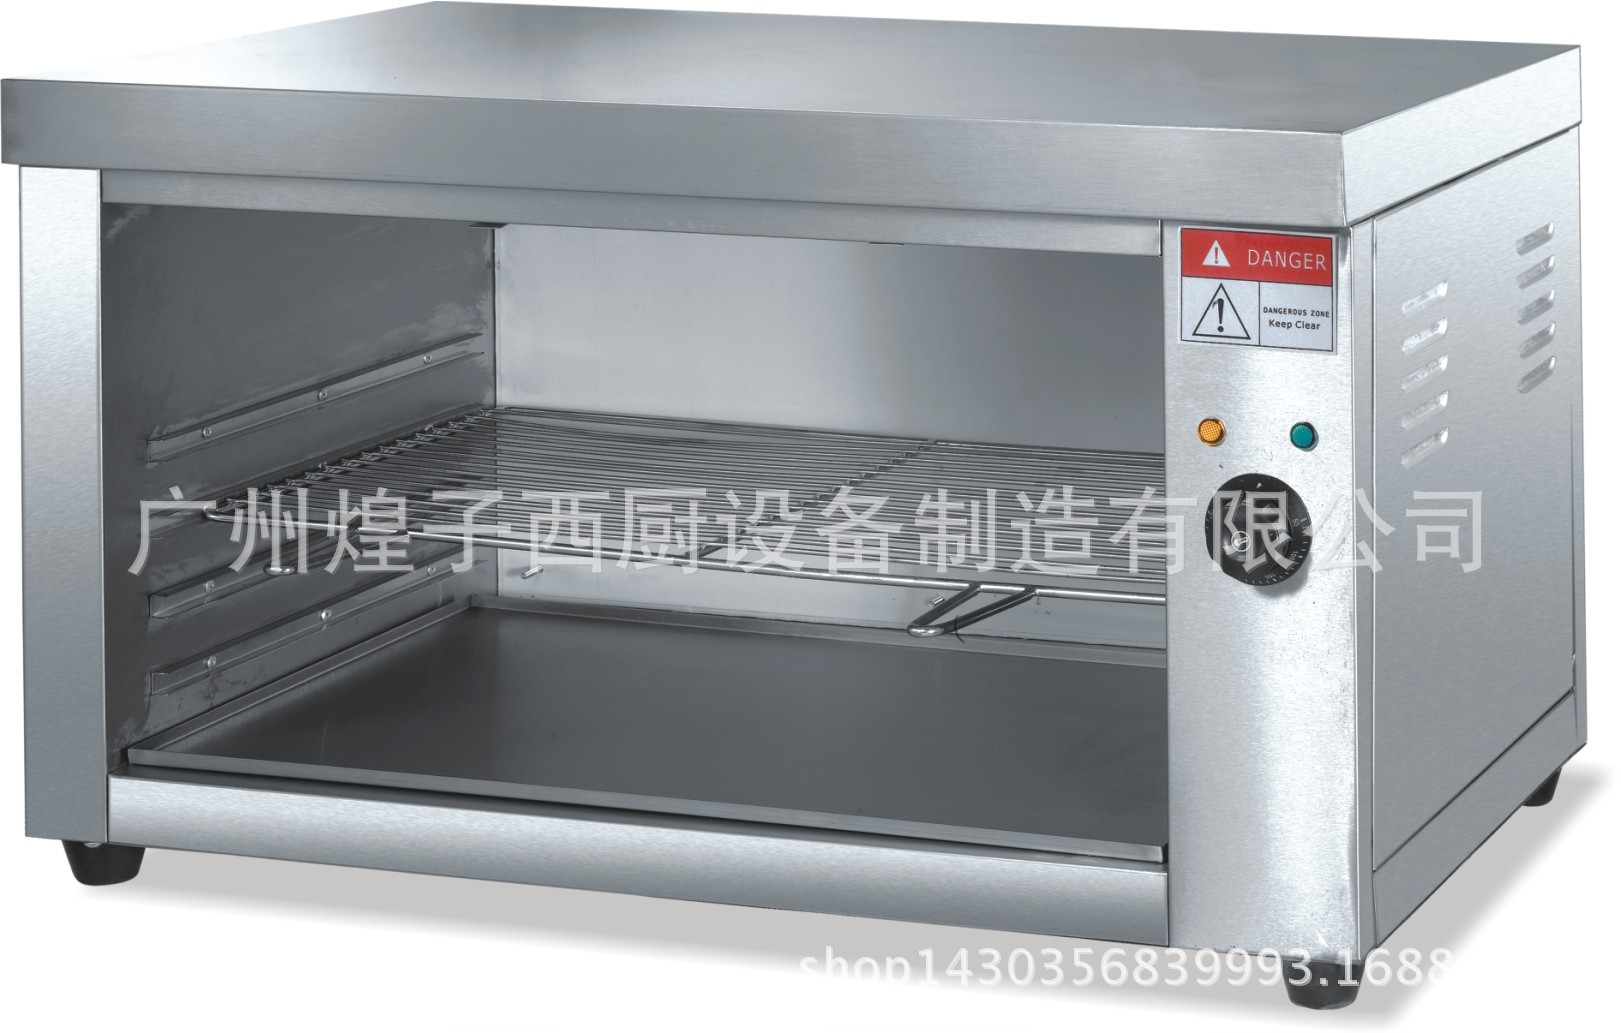 王子西厨直销 AT-937台式面火炉 商用 单面烧烤炉 日式电热面火炉